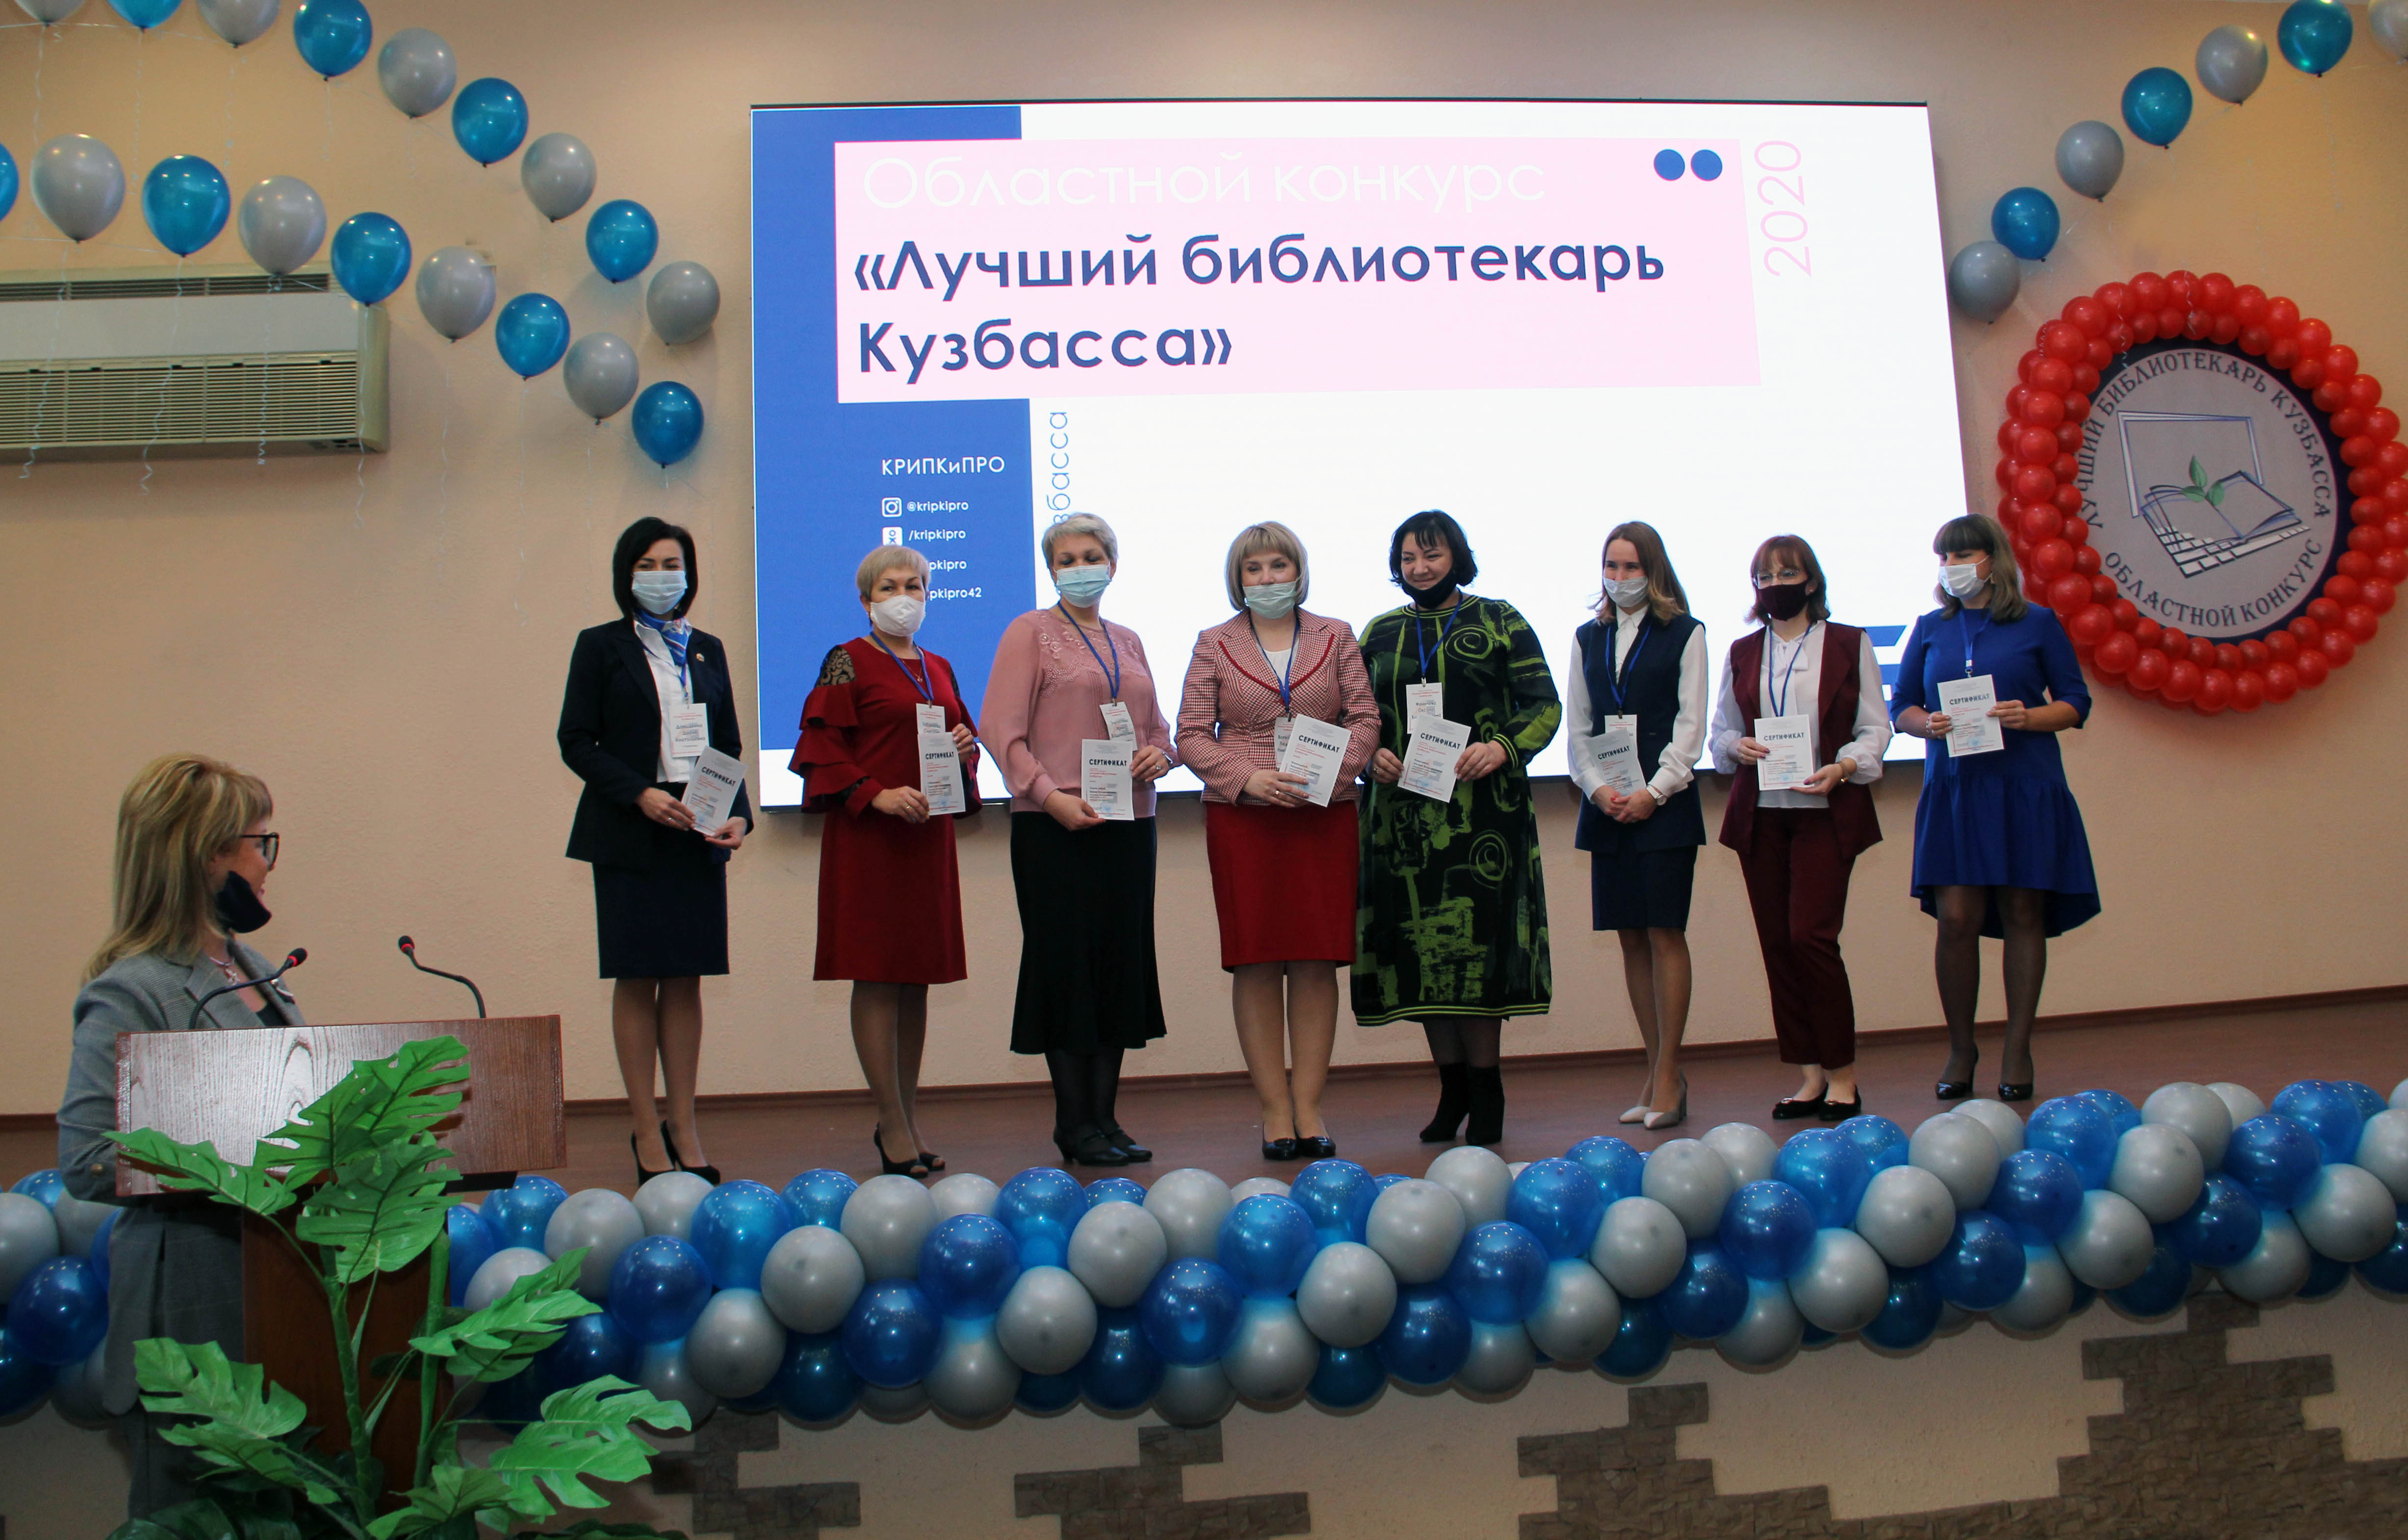 Ирина Злыгостева из Междуреченска признана лучшим библиотекарем Кузбасса в этом году